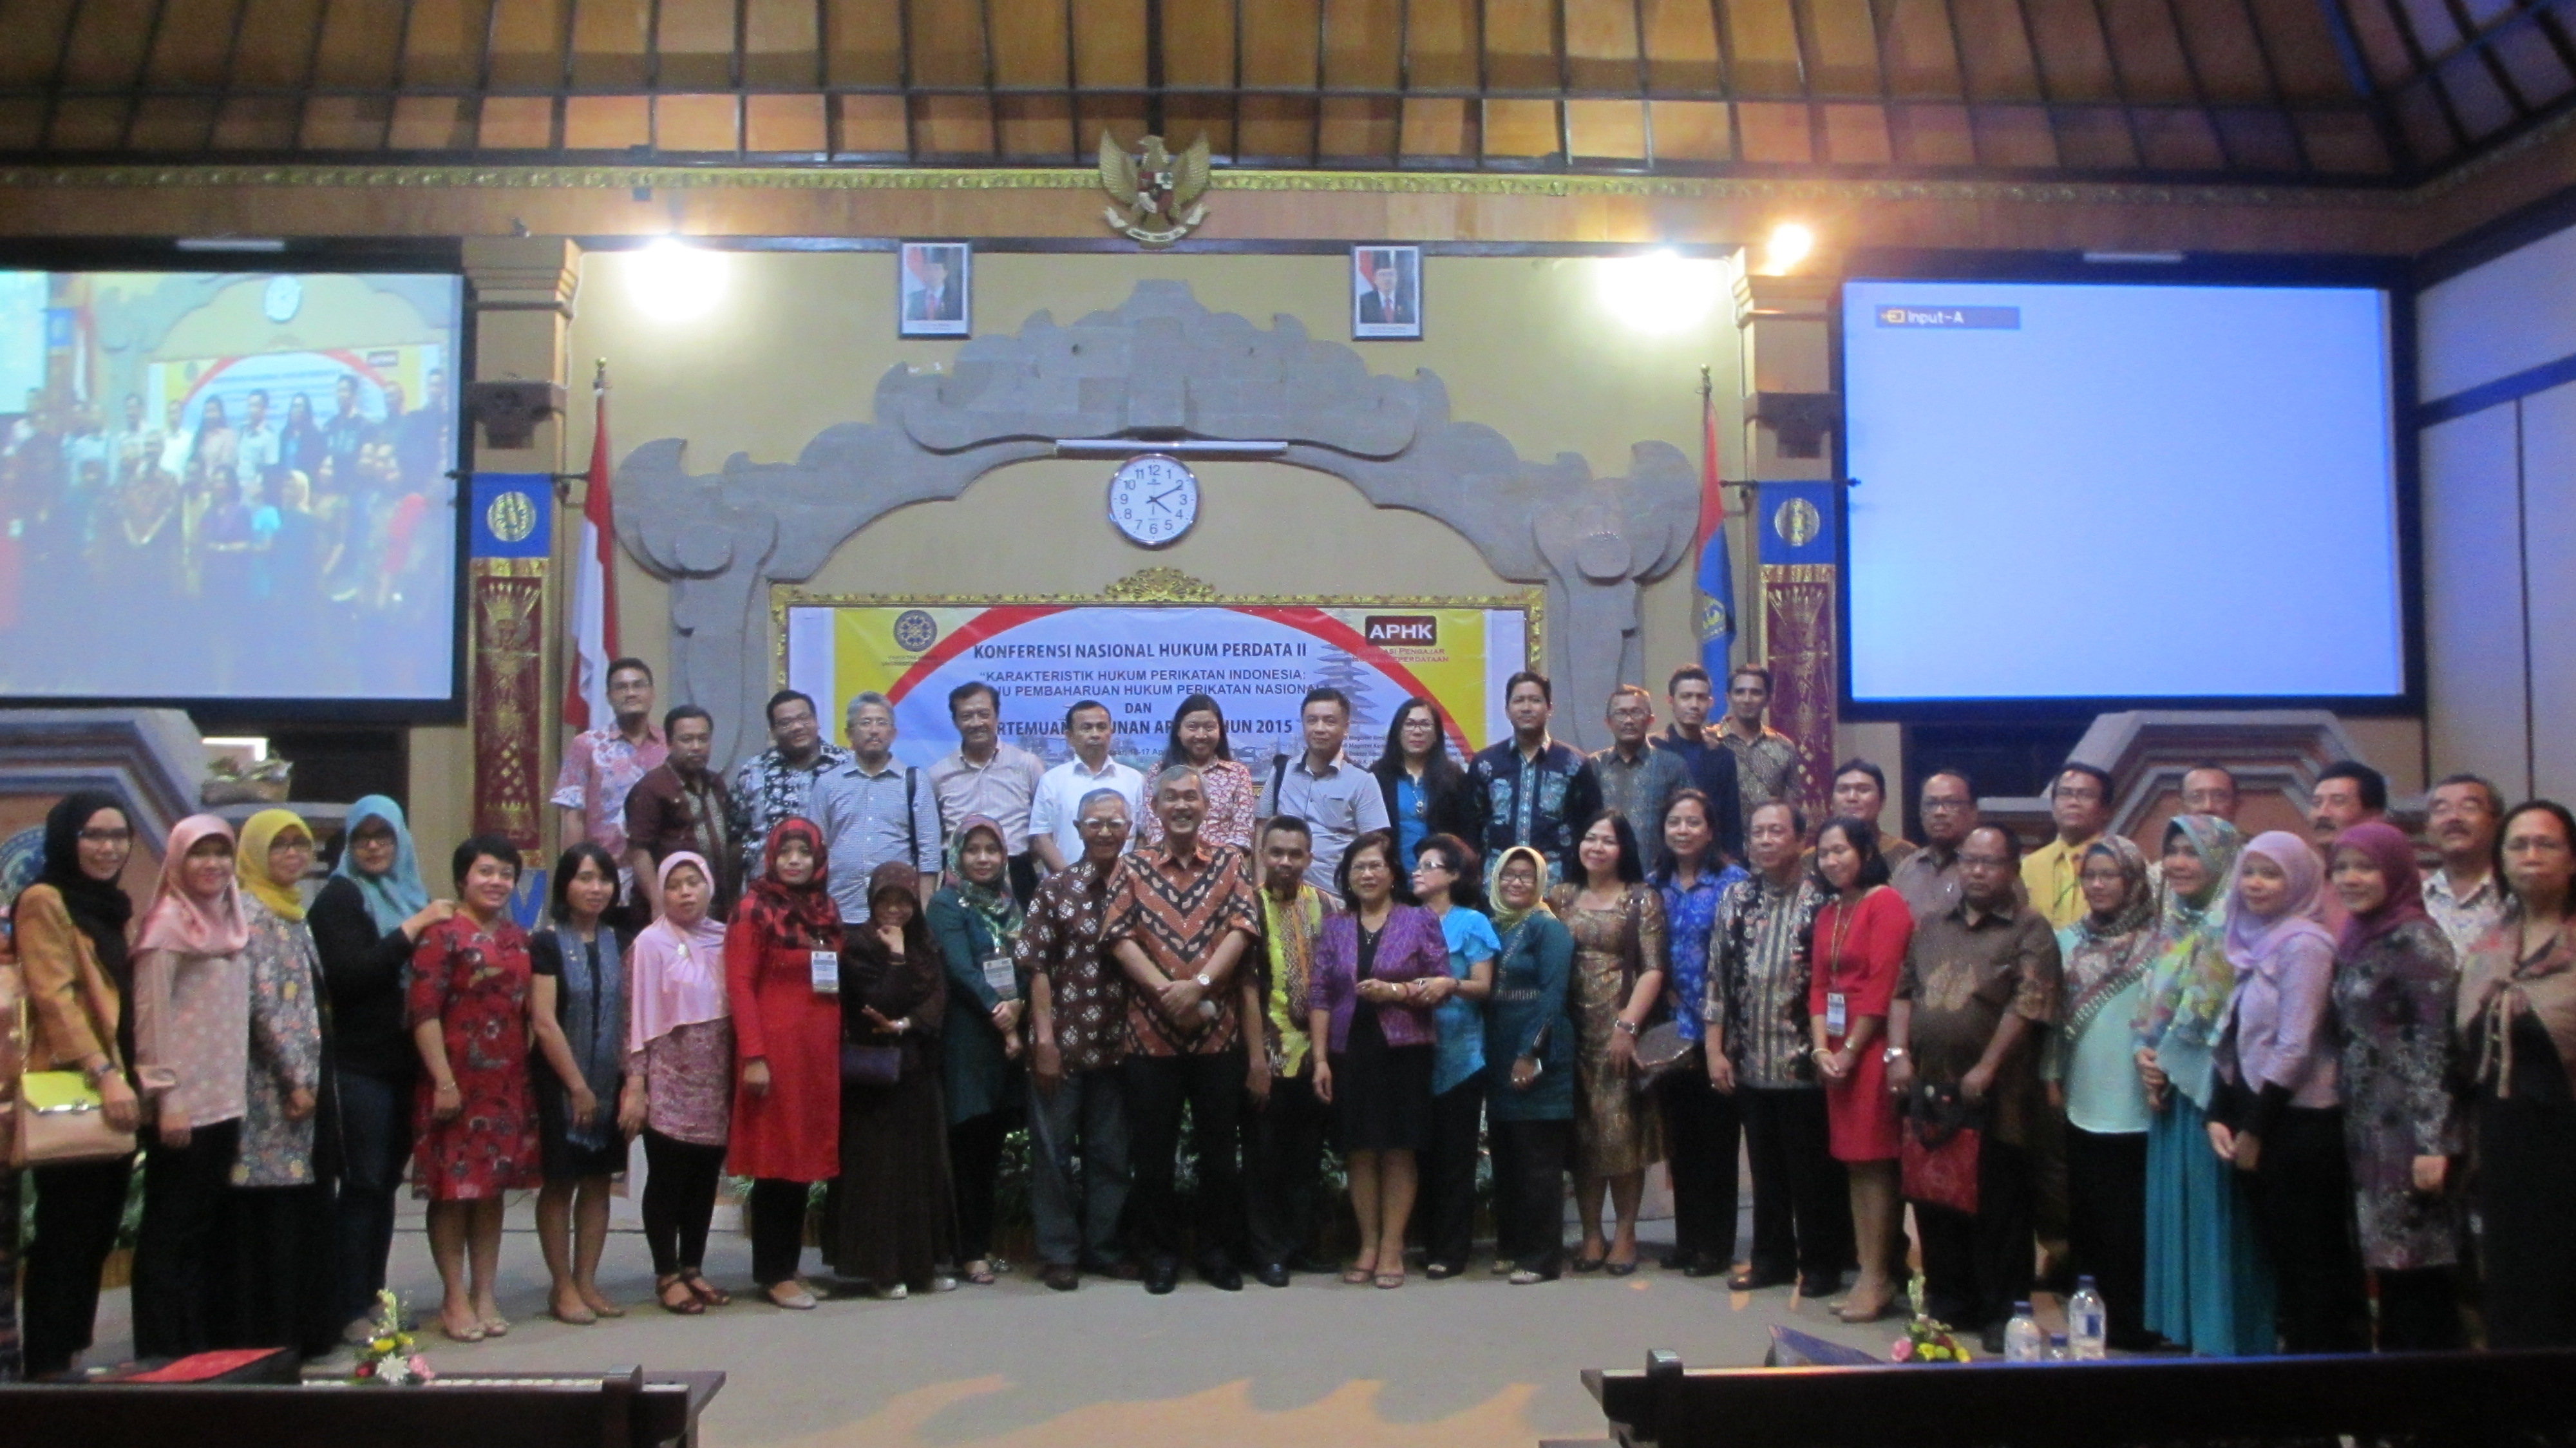 Para akademisi yang tergabung dalam Asosiasi Pengajar Hukum Keperdataan saat menggelar Konferensi di FH Udayana, Bali, 16-17 April 2015. Foto: RIA